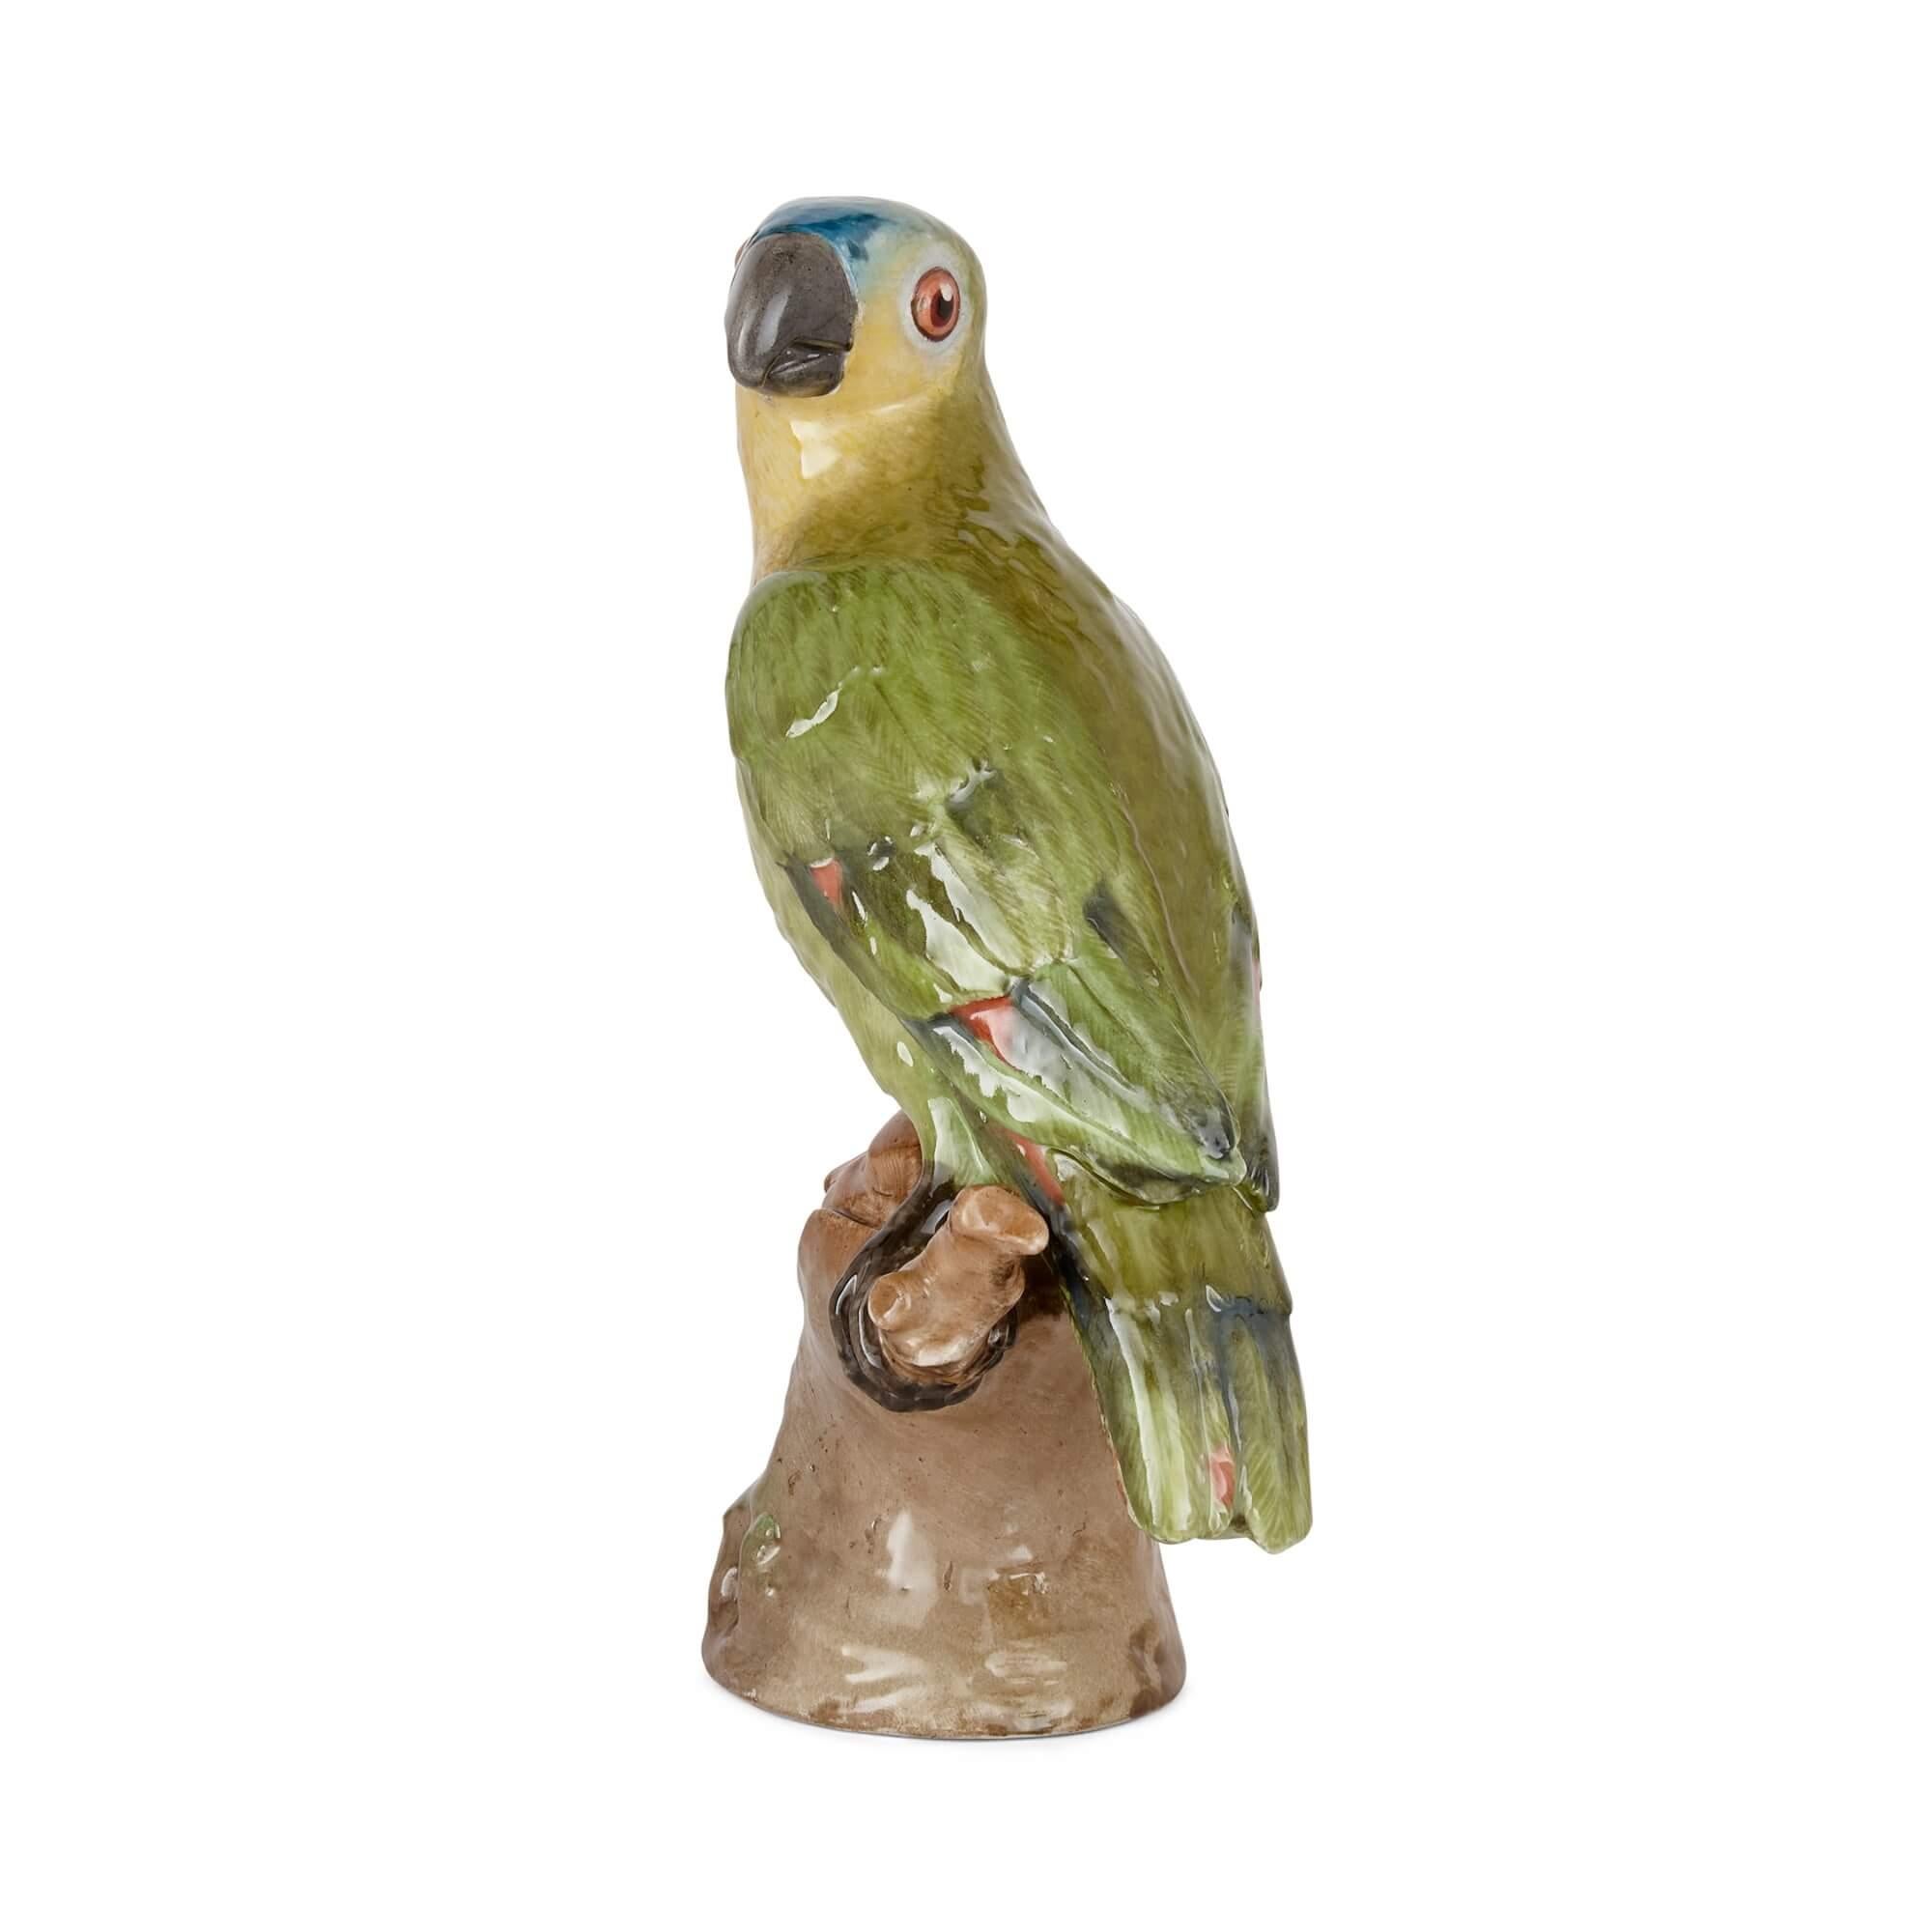 Modèle de perroquet en porcelaine KPM
Allemand, Fin du 19e siècle 
Hauteur 23cm, largeur 12cm, profondeur 9cm

Marquée pour KPM, les principaux fabricants allemands de porcelaine, cette charmante sculpture animalière est un modèle d'oiseau en